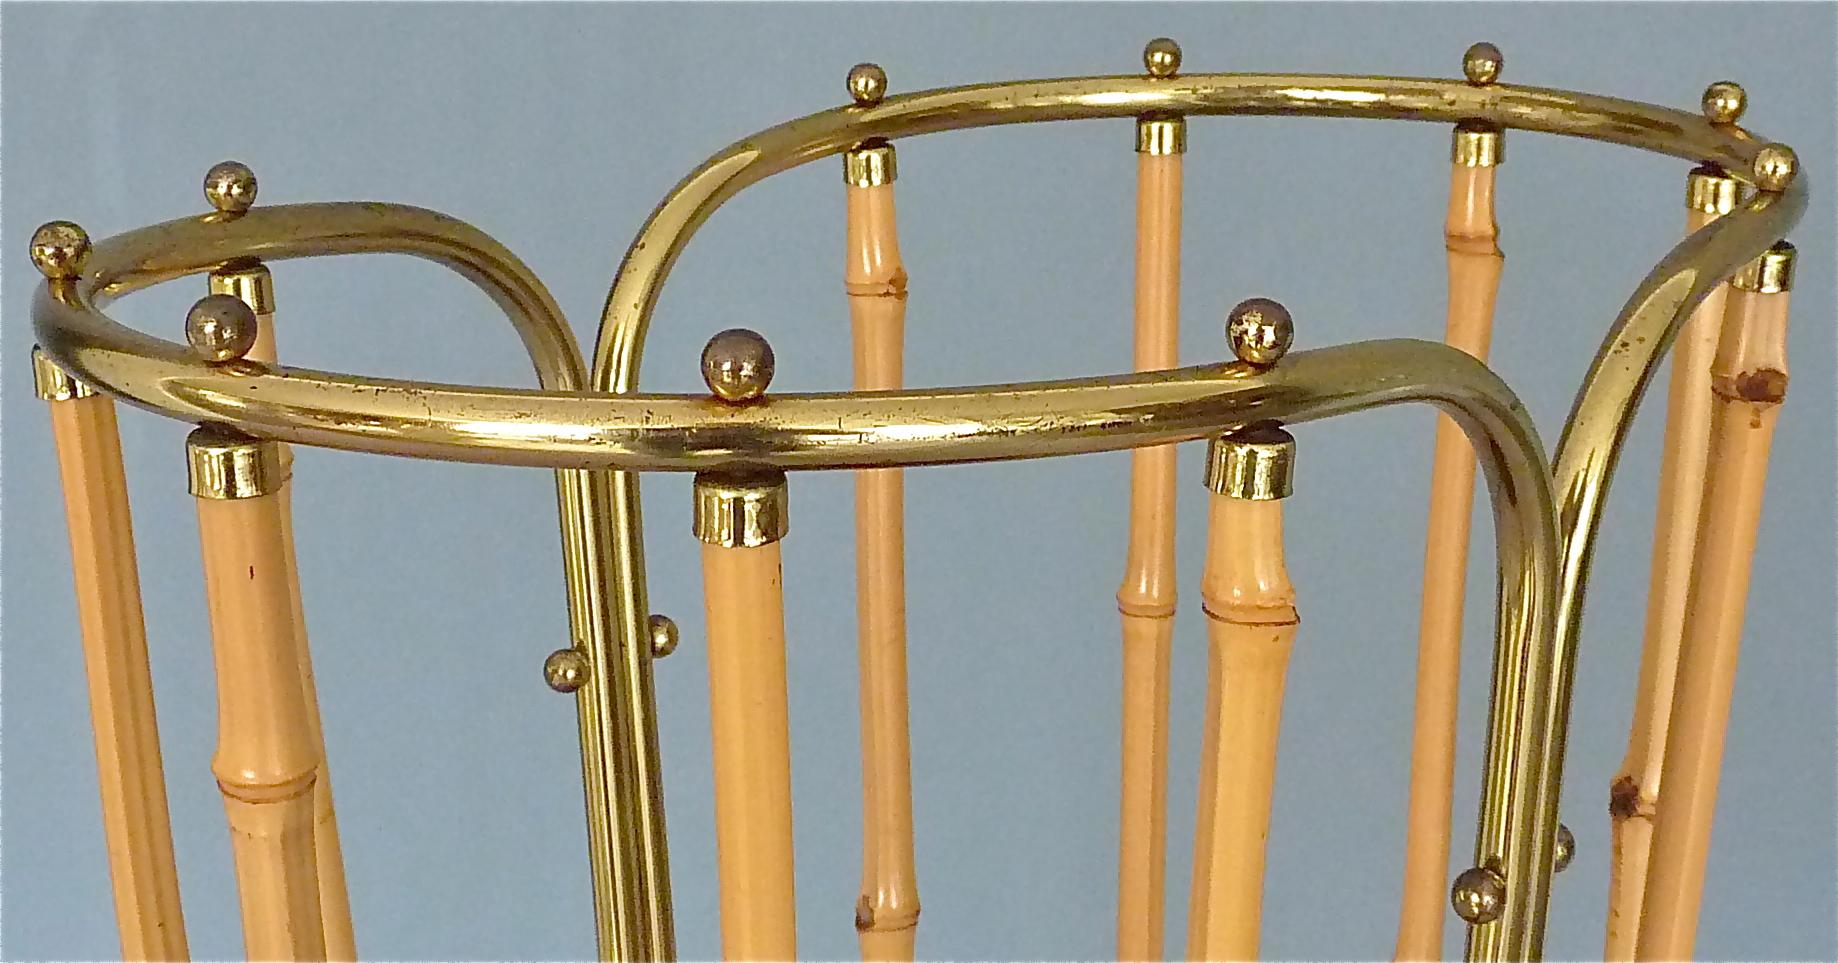 1950s Austrian Modernist Umbrella Stand Brass Bamboo, Josef Frank, Auböck Style 2